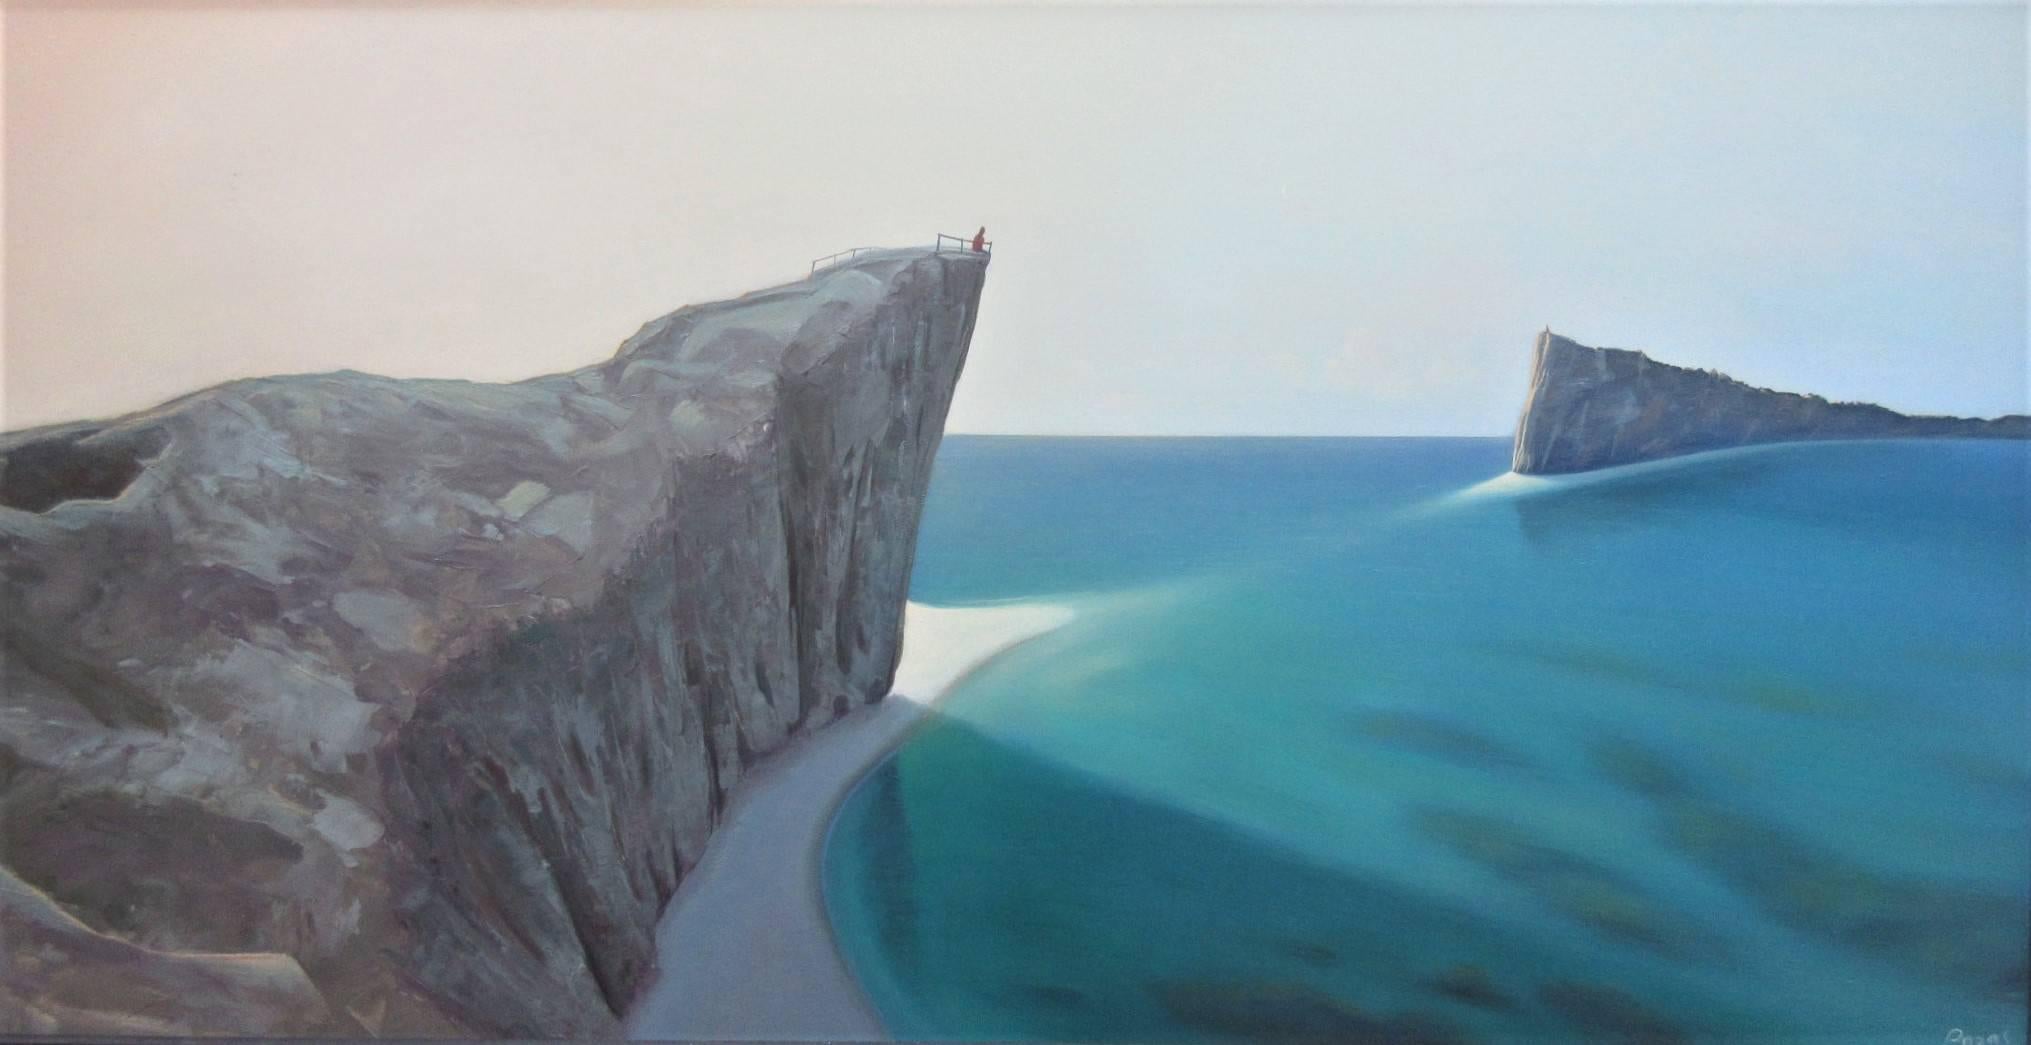 René Monzón Relova “Pozas” Landscape Painting - The Dialogue, Surrealist Landscape with Aqua Blue Ocean and Rocky Cliffs, Framed